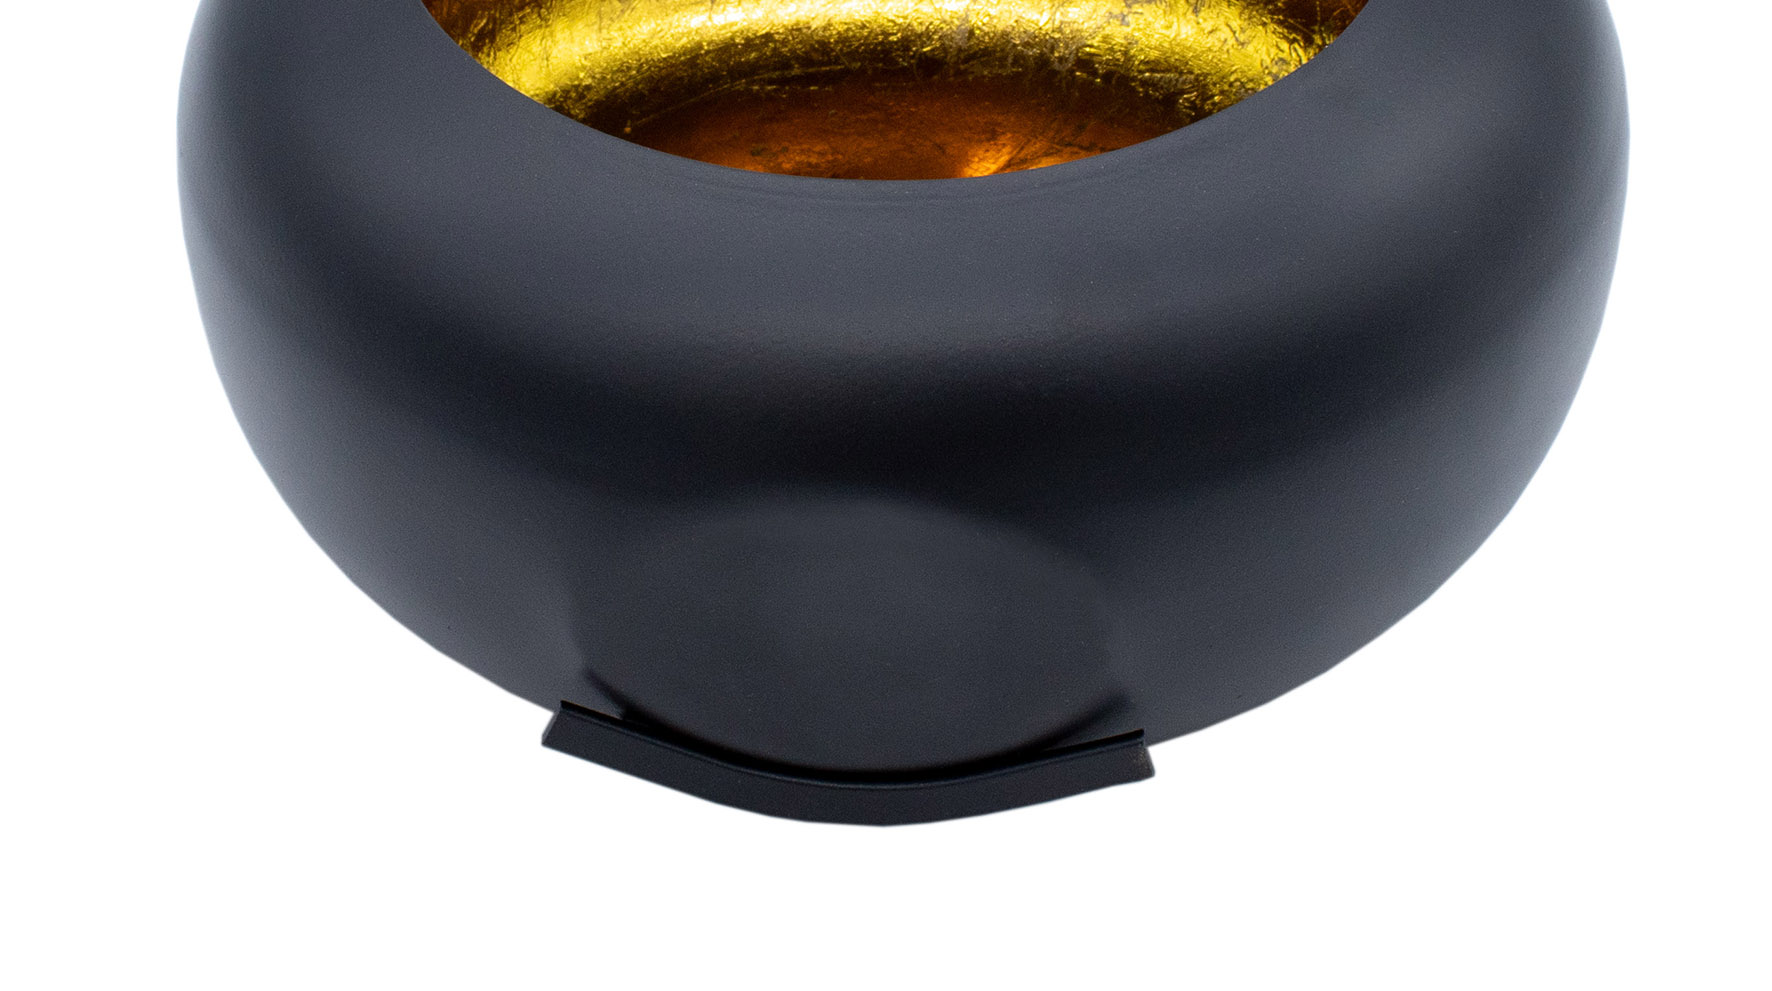 Deko Kerzen Schale 20 cm - schwarz matt / innen gold - Windlicht im orientalischen Design